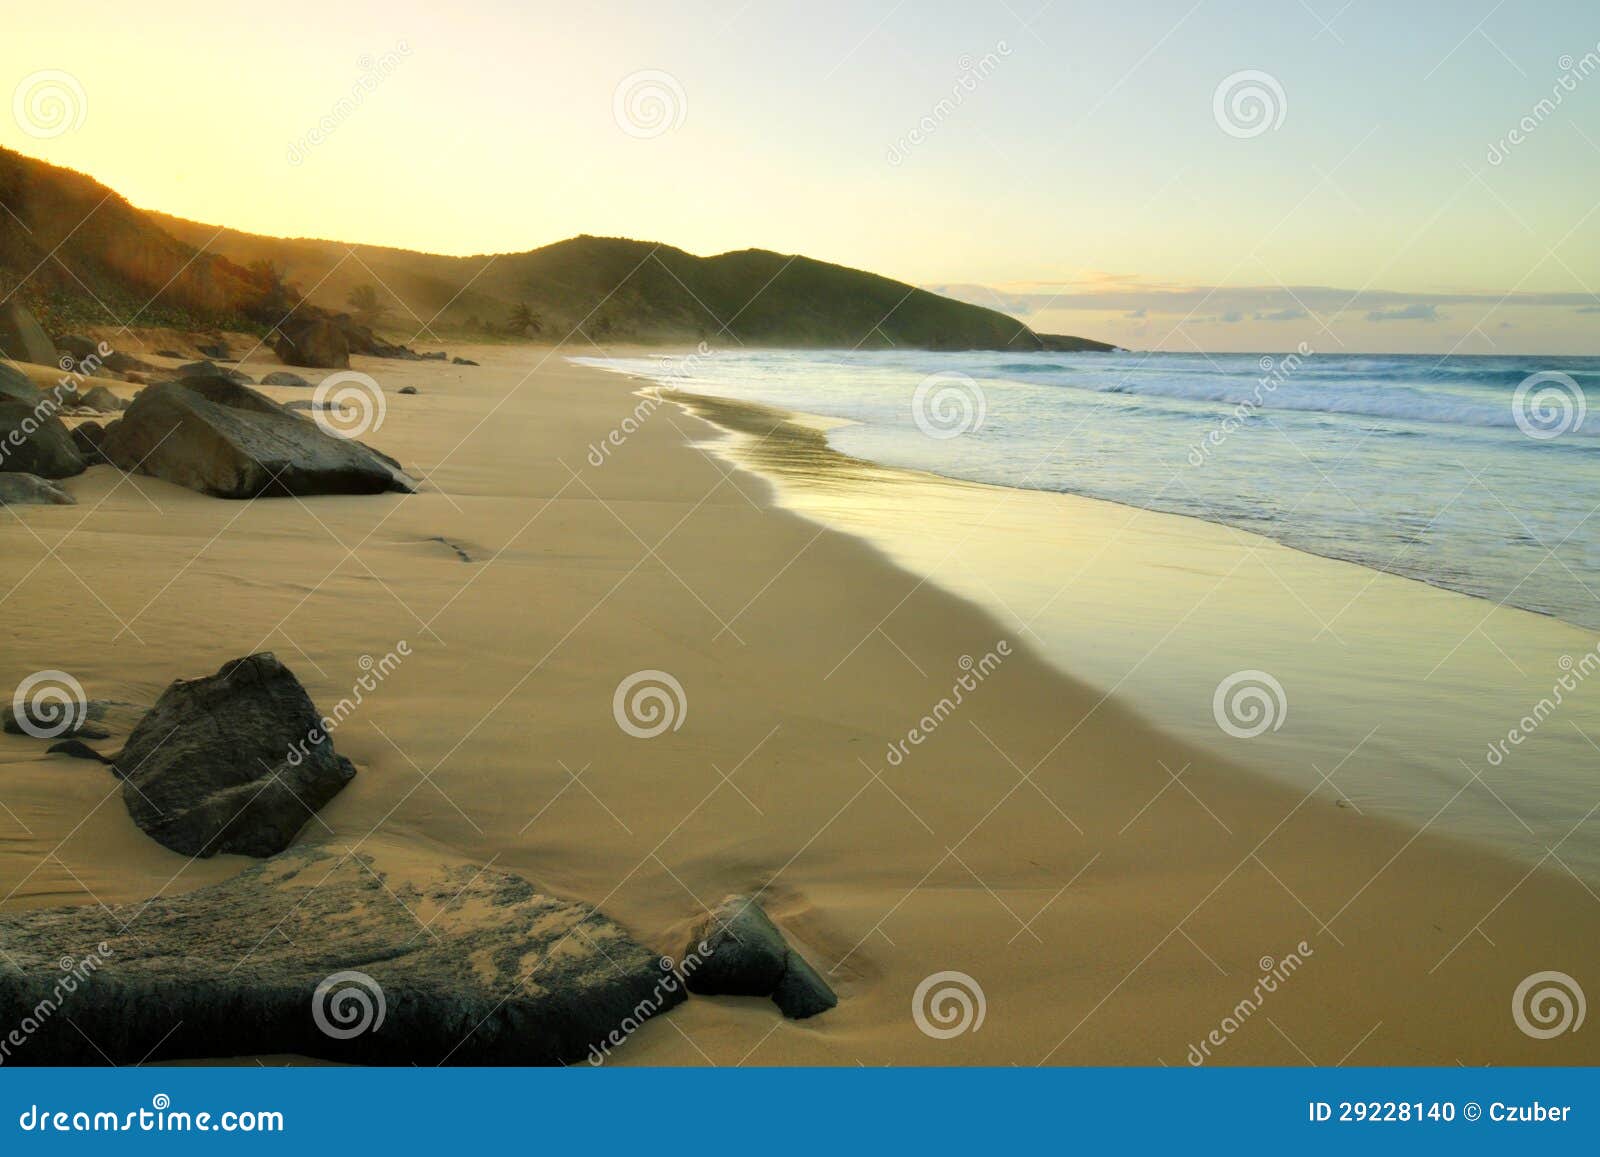 resaca beach, isla culebra